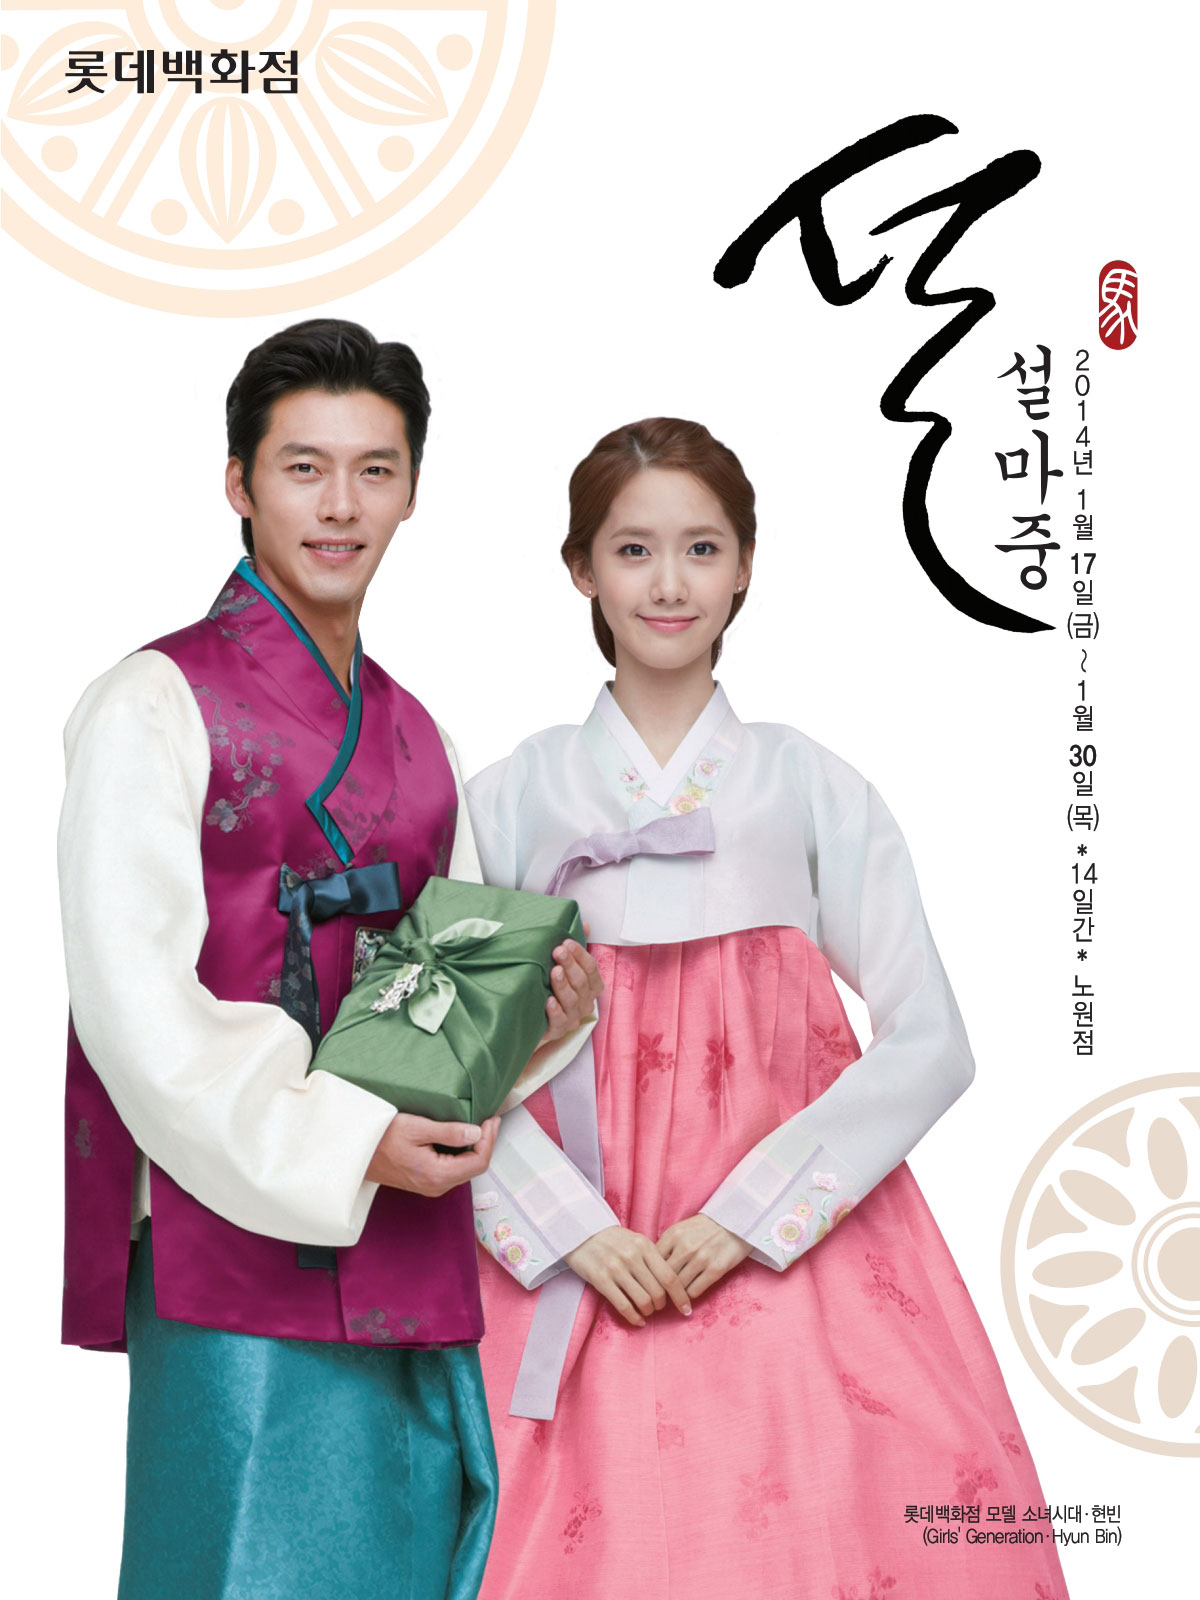 Yoona & Hyun Bin Lotte Lunar New Year Ad